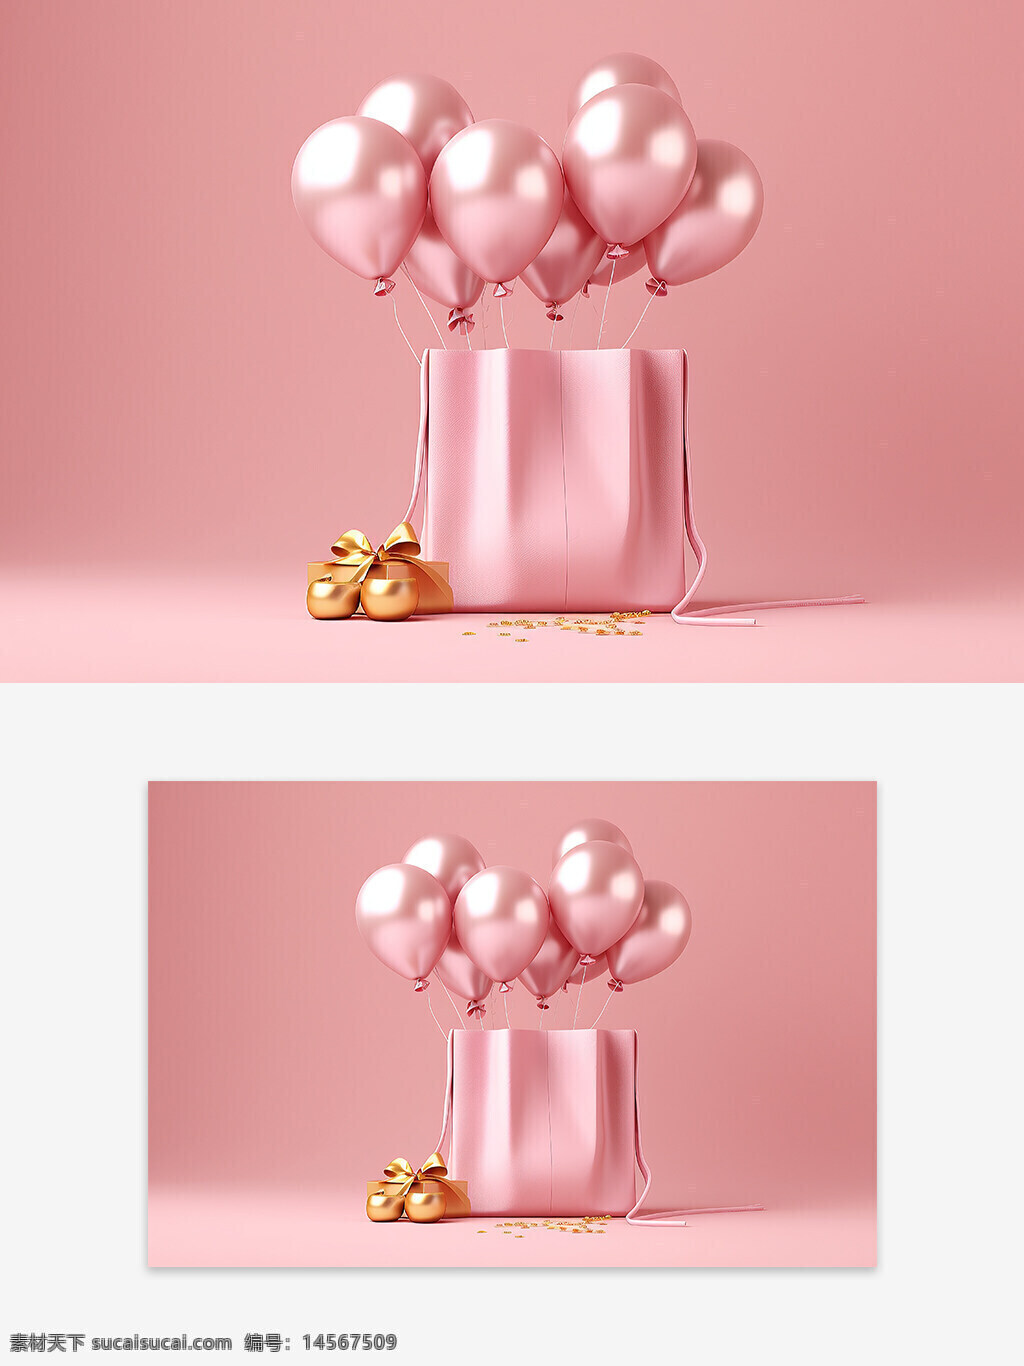 节日庆祝 庆祝气球 气球背景 背景设计 情人节背景 电商背景 创意促销背景